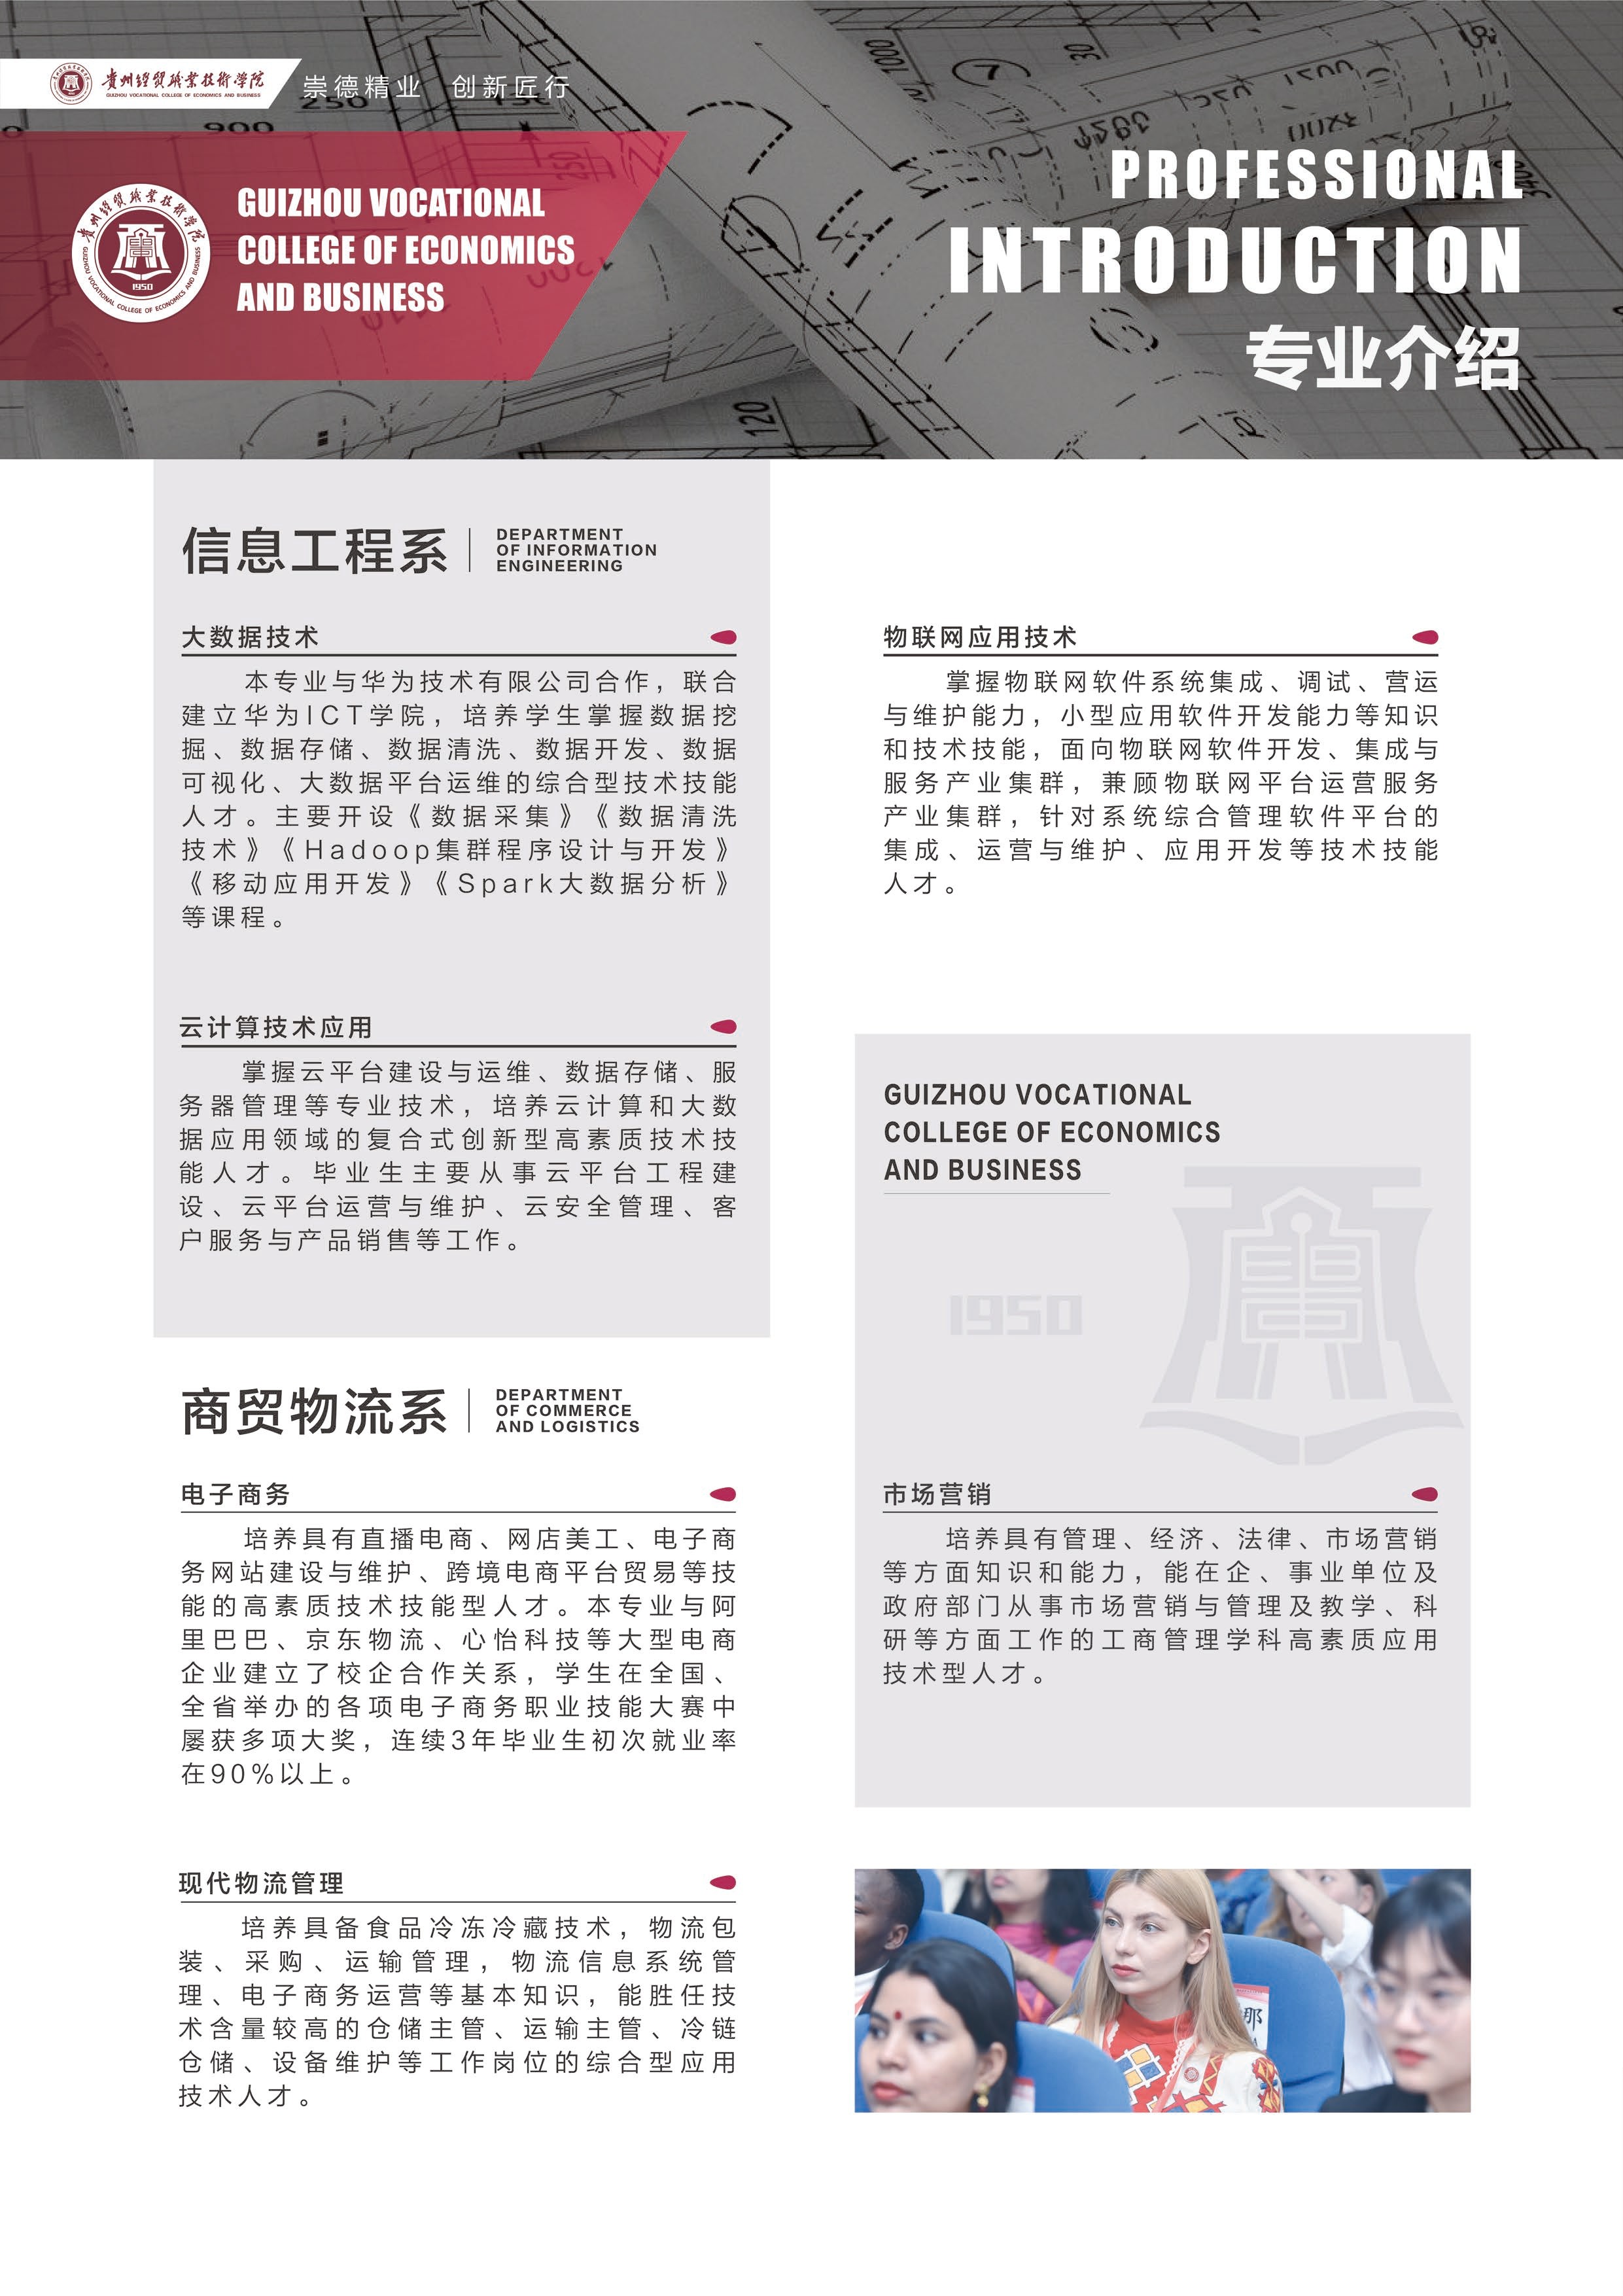 10贵州经贸职业技术学院2022年招生简章_1.jpg